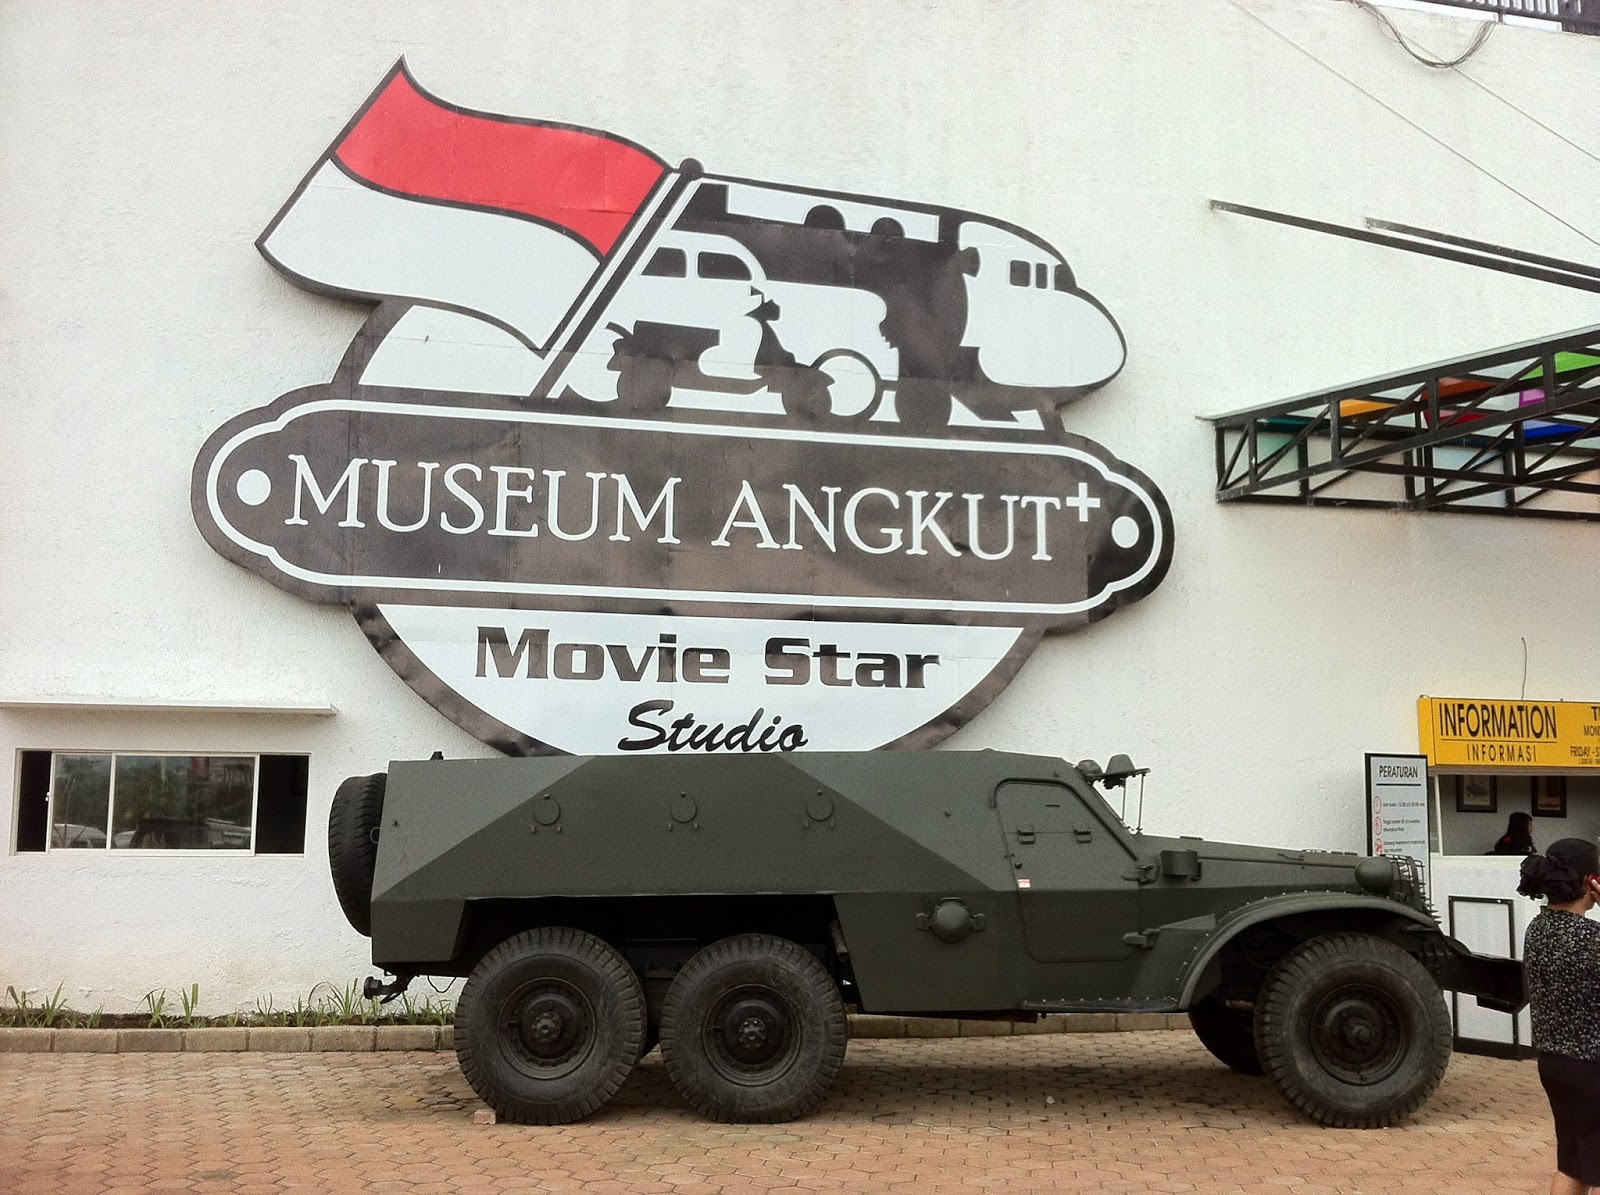 Wisata Malang Museum Angkut Anekatempatwisata